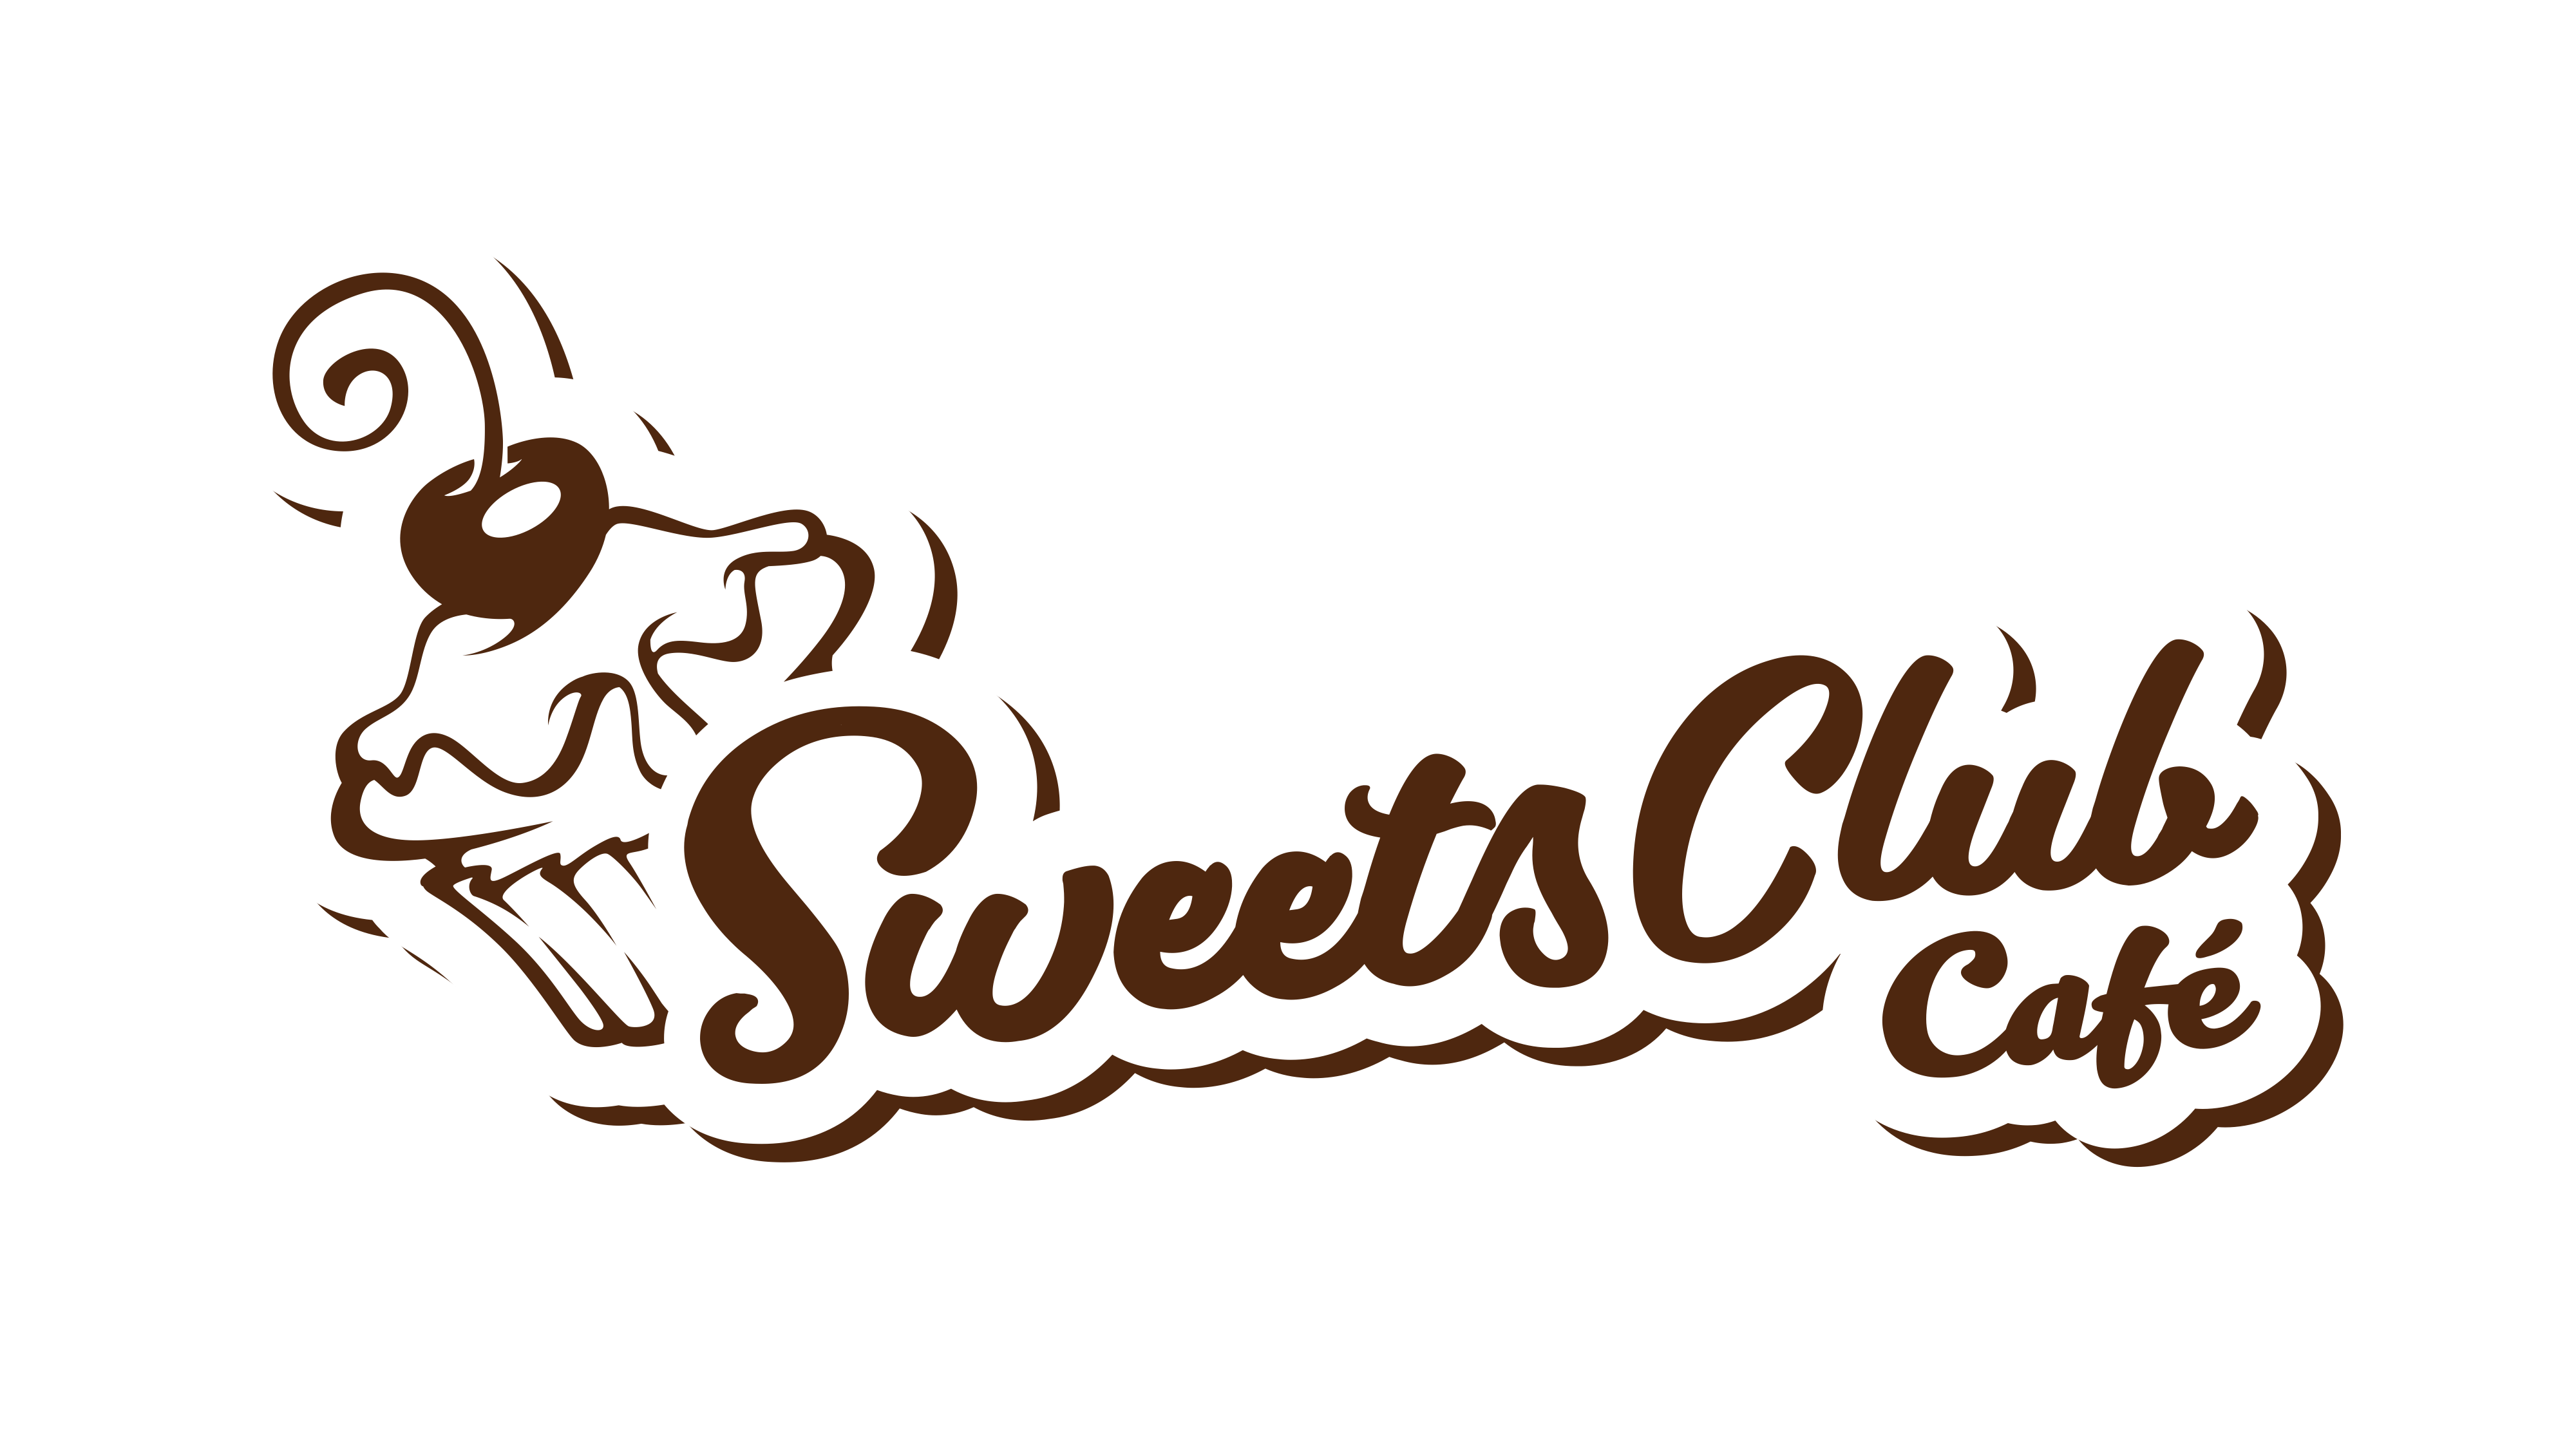 NEW! SweetsClub Cafe!